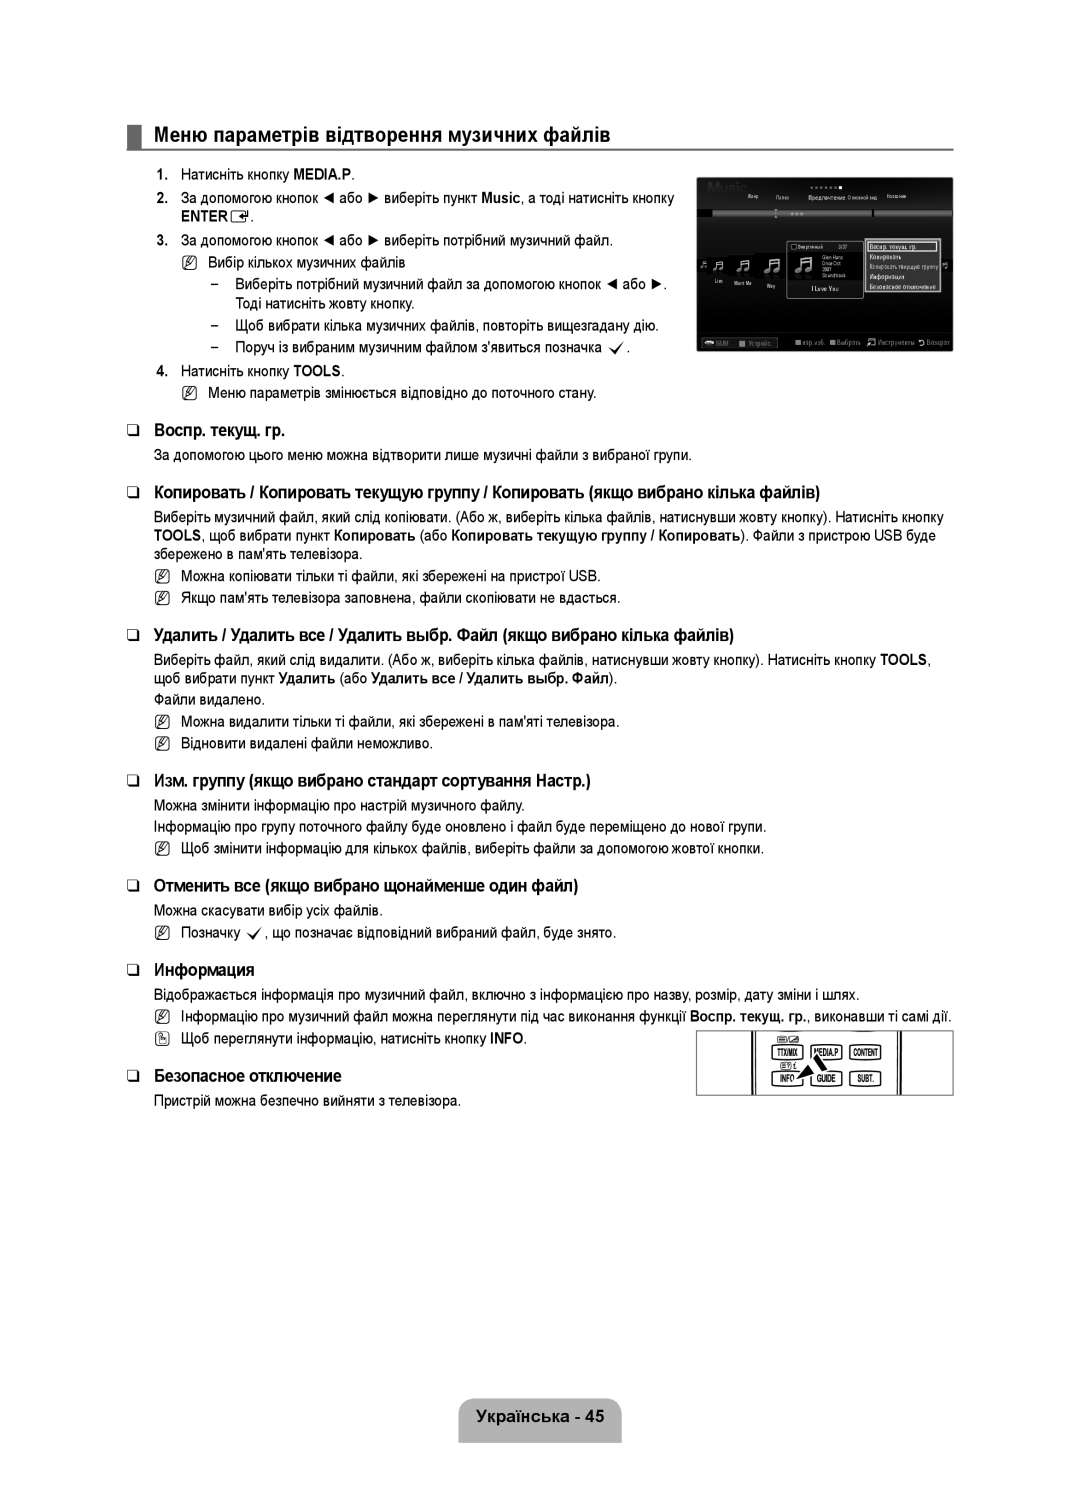 Samsung UE40B7020WWXUA Меню параметрів відтворення музичних файлів, Изм. группу якщо вибрано стандарт сортування Настр 